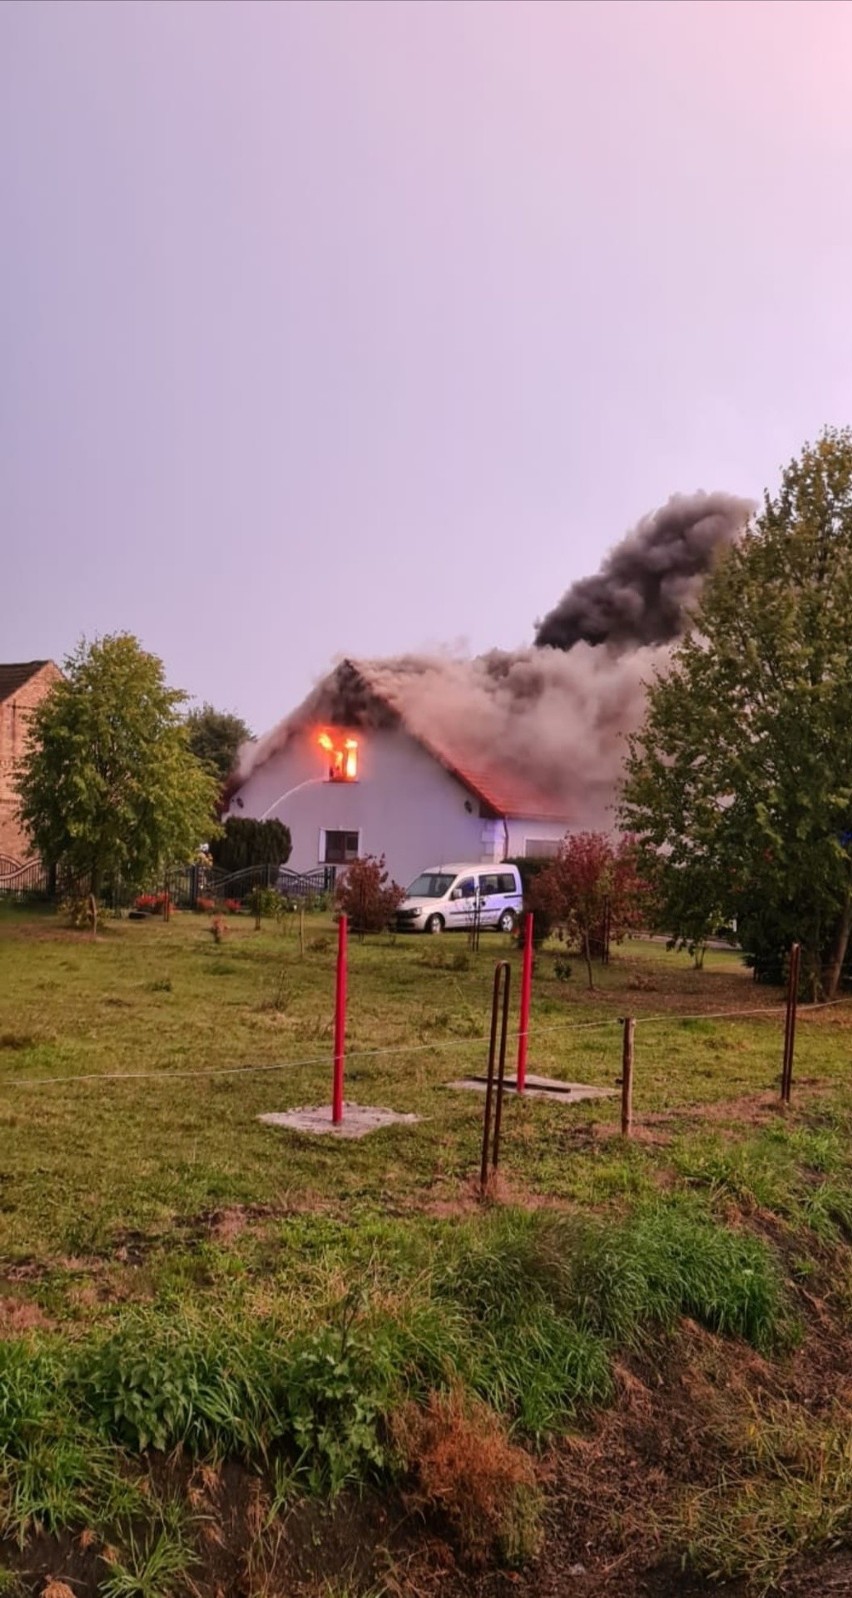 Dom w Krasowcu gasiły jednostki: JRG2 Gorzów, OSP Krasowiec,...